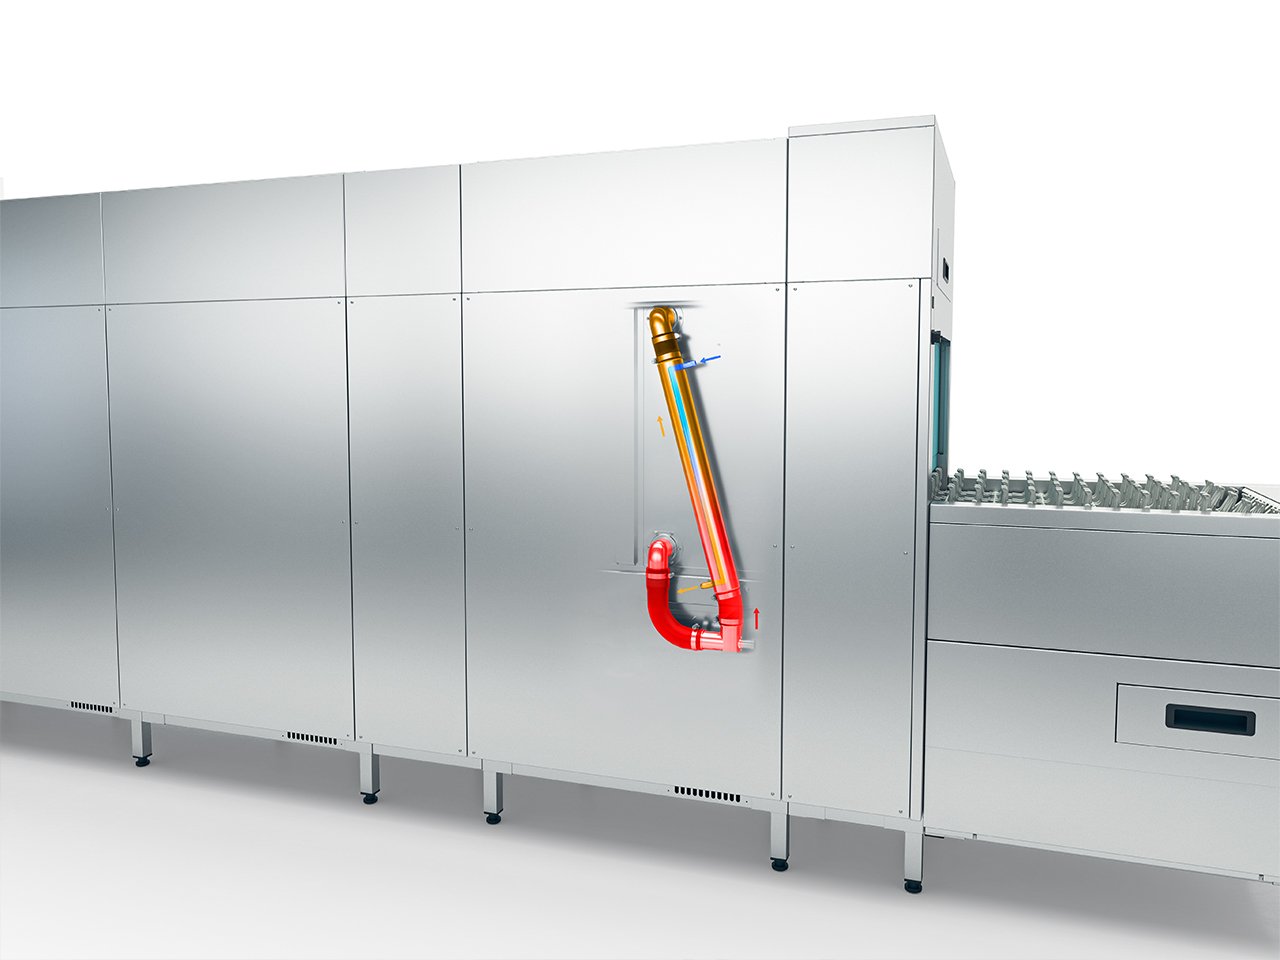 Winterhalter protočne mašine za pranje sa transportom korpi MTF - izmenjivač toplote sa zonom pretpranja posuđa